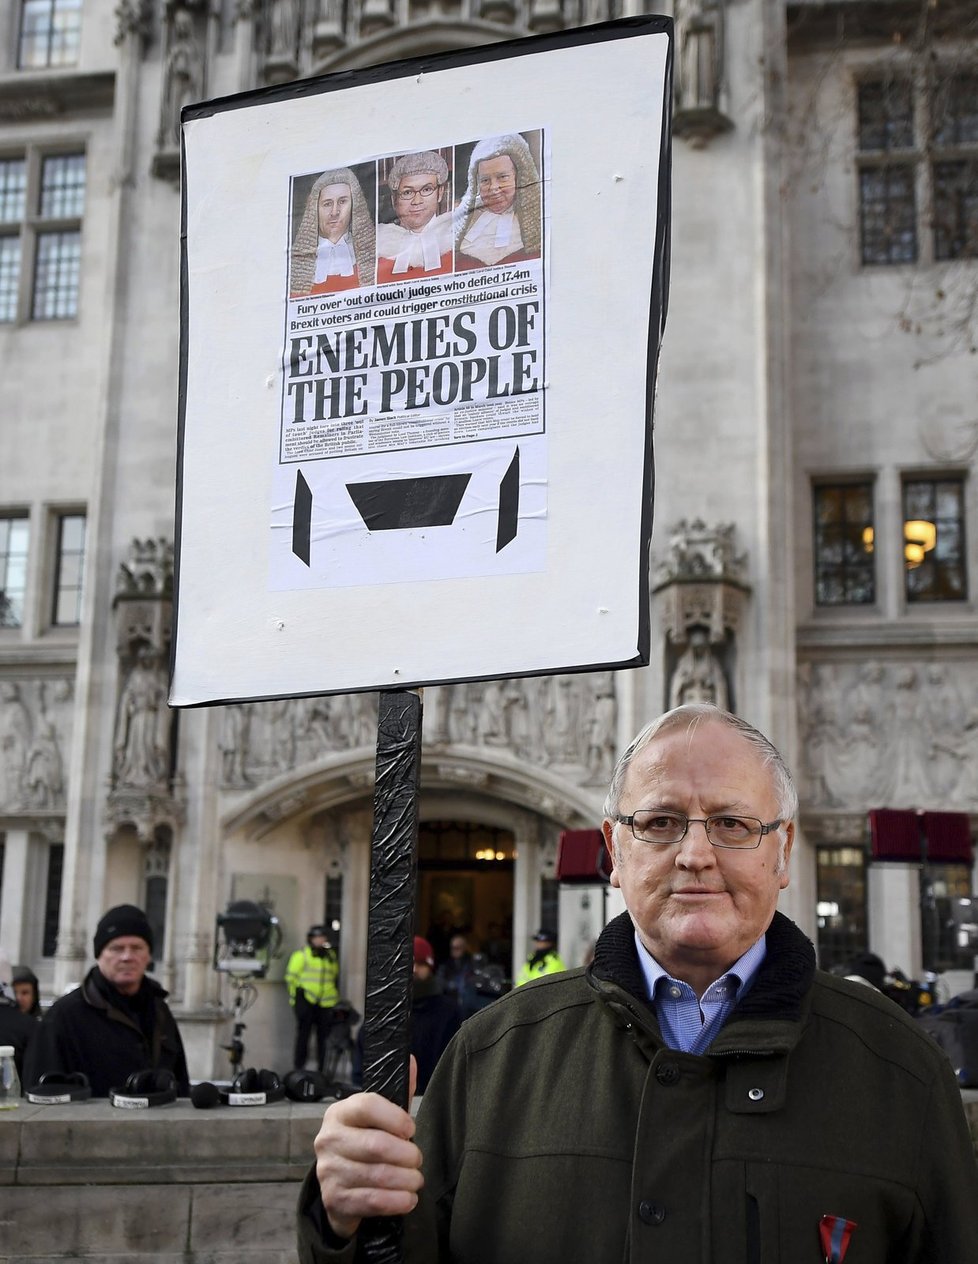 Před budovou Nejvyššího soudu protestovali příznivci i odpůrci Brexitu.